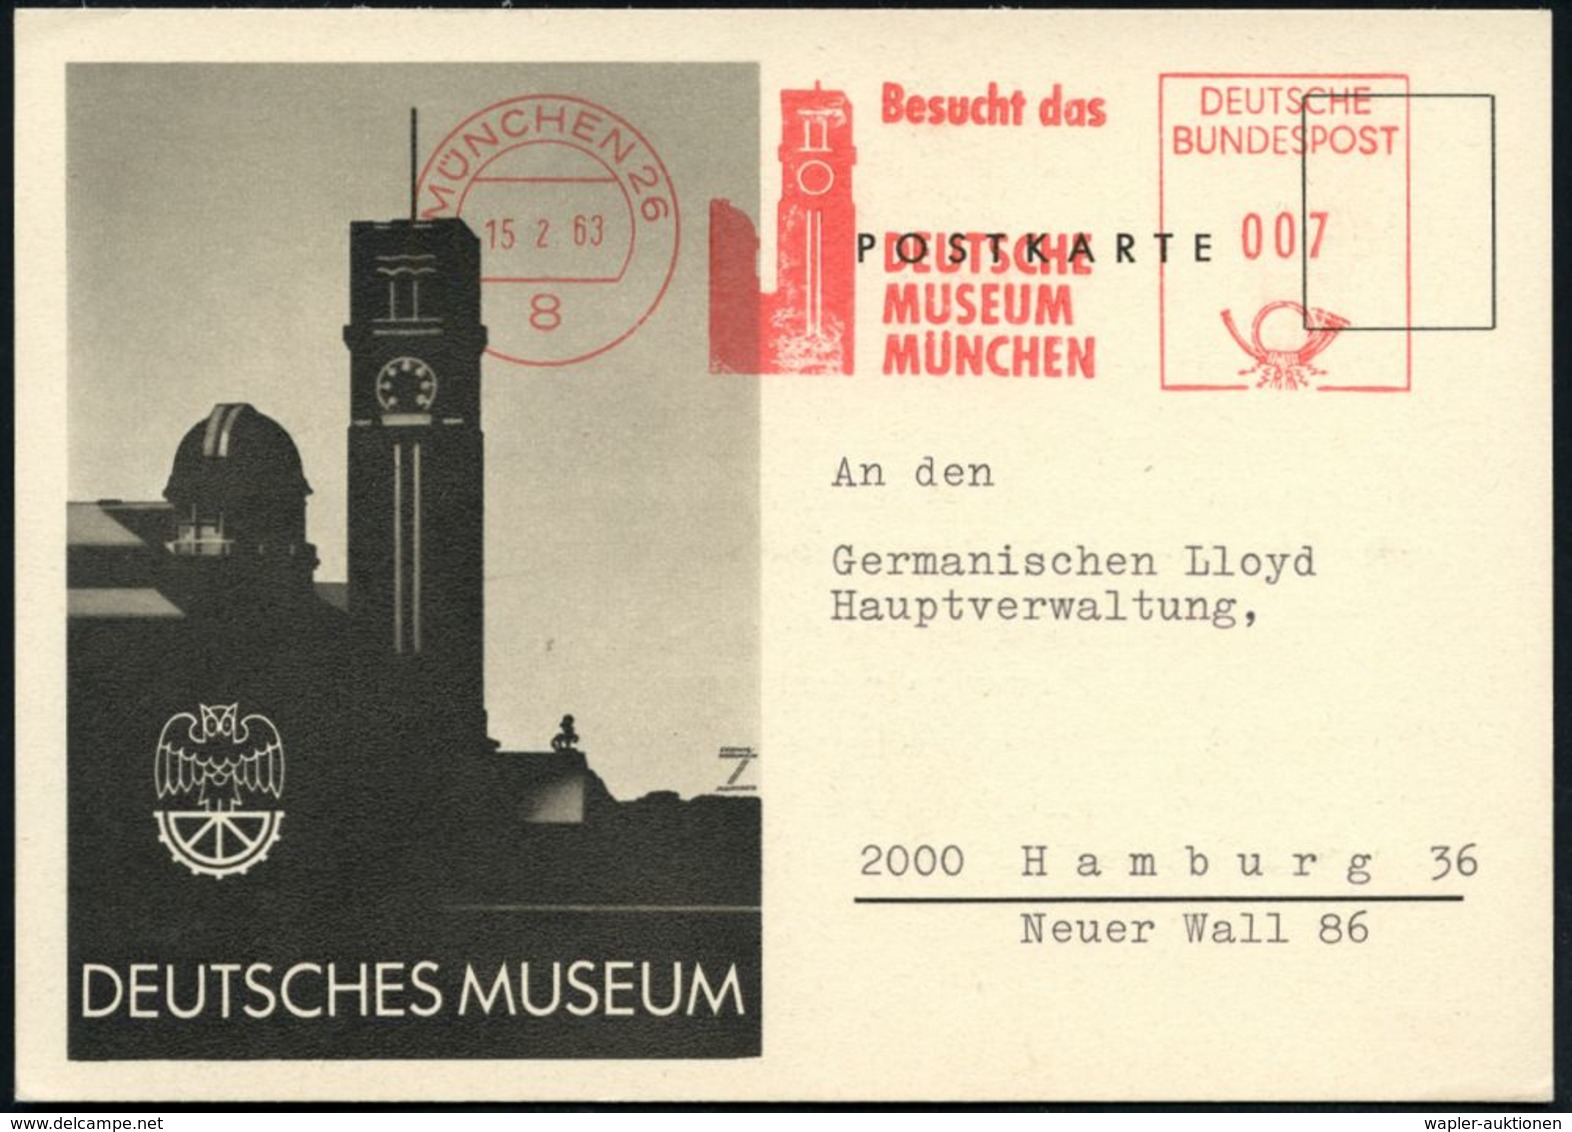 ASTRONOMIE / OBSERVATORIEN / PLANETARIEN : 8 MÜNCHEN 26/ Besucht Das/ DEUTSCHE/ MUSEUM.. 1977 AFS = Astronom. Observator - Astronomia